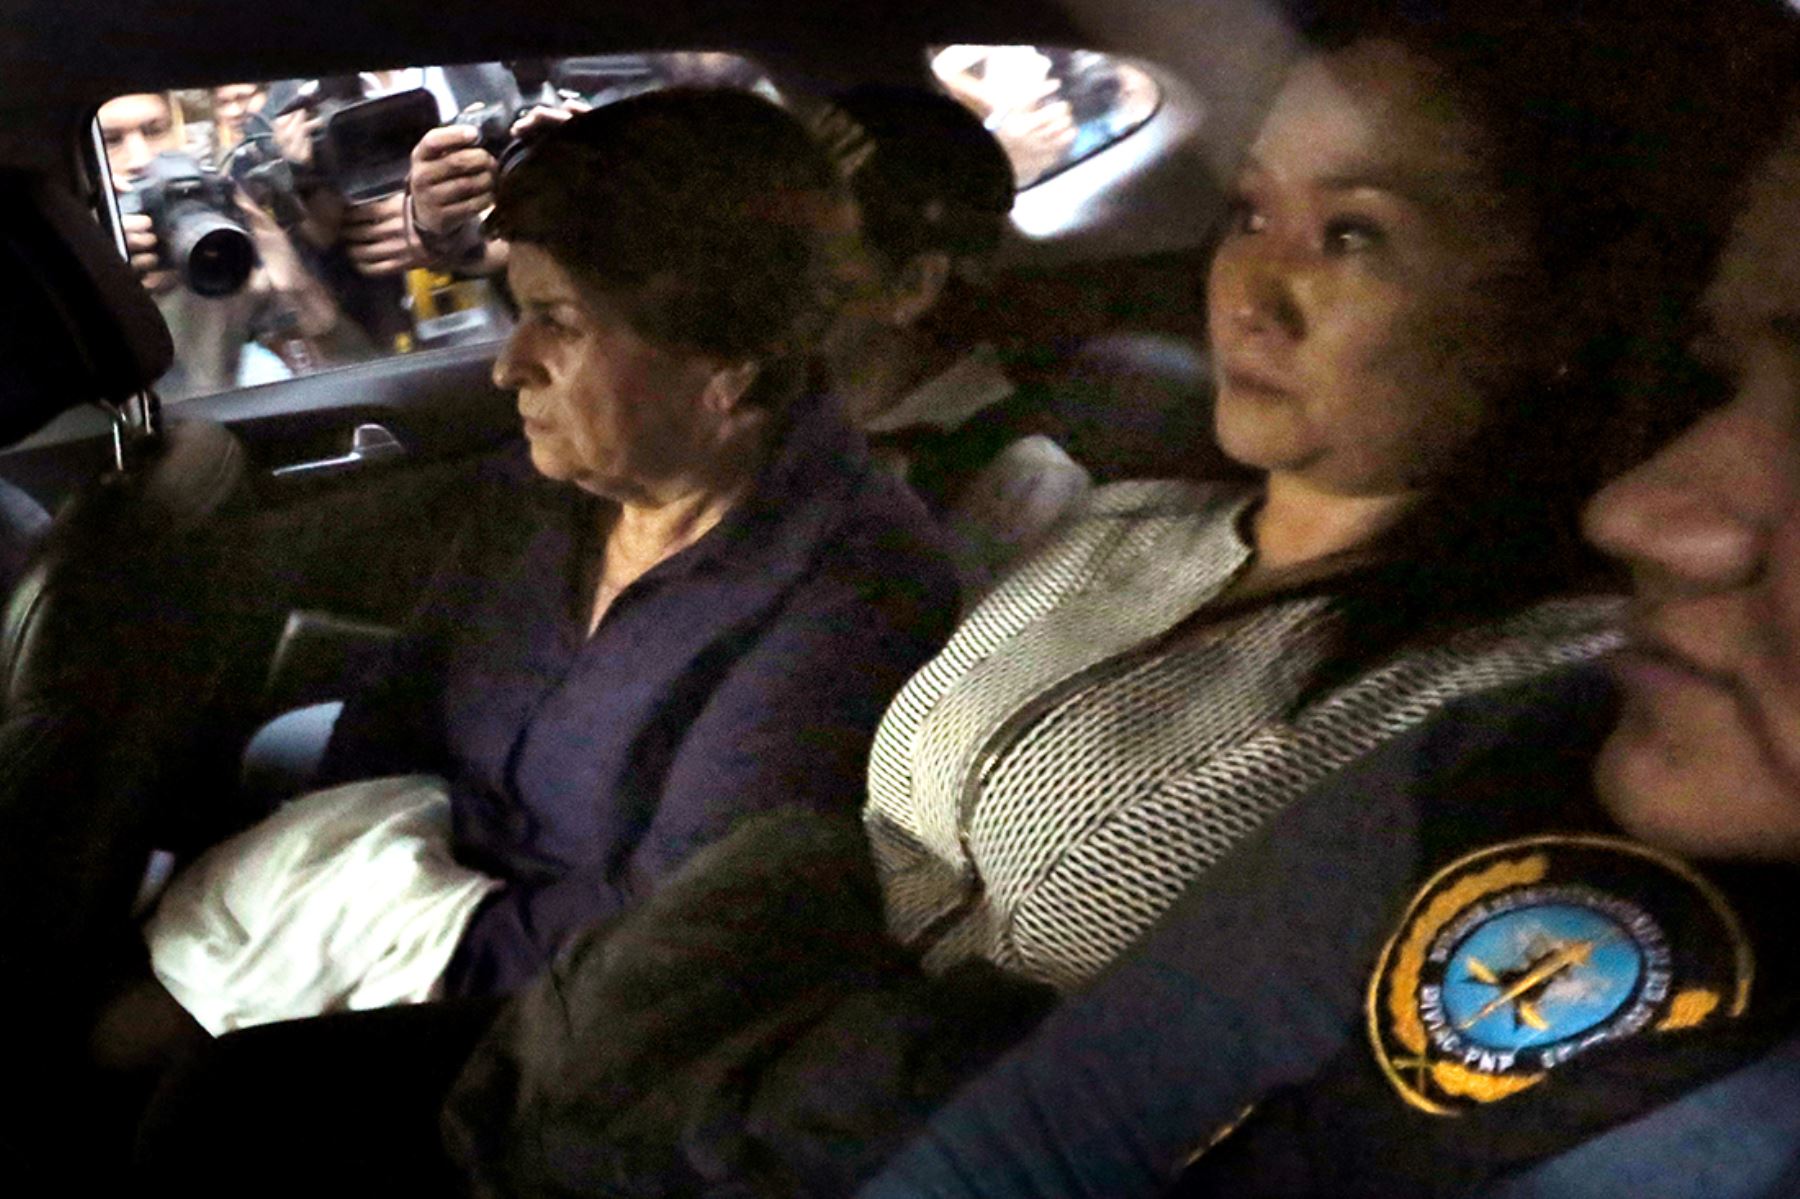 Keiko Fujimori es trasladada bajo custodia en un vehículo policial el 10 de octubre de 2018 tras ser arrestada por presunto delito de lavado de activos durante su campaña electoral del 2011. Foto: AFP